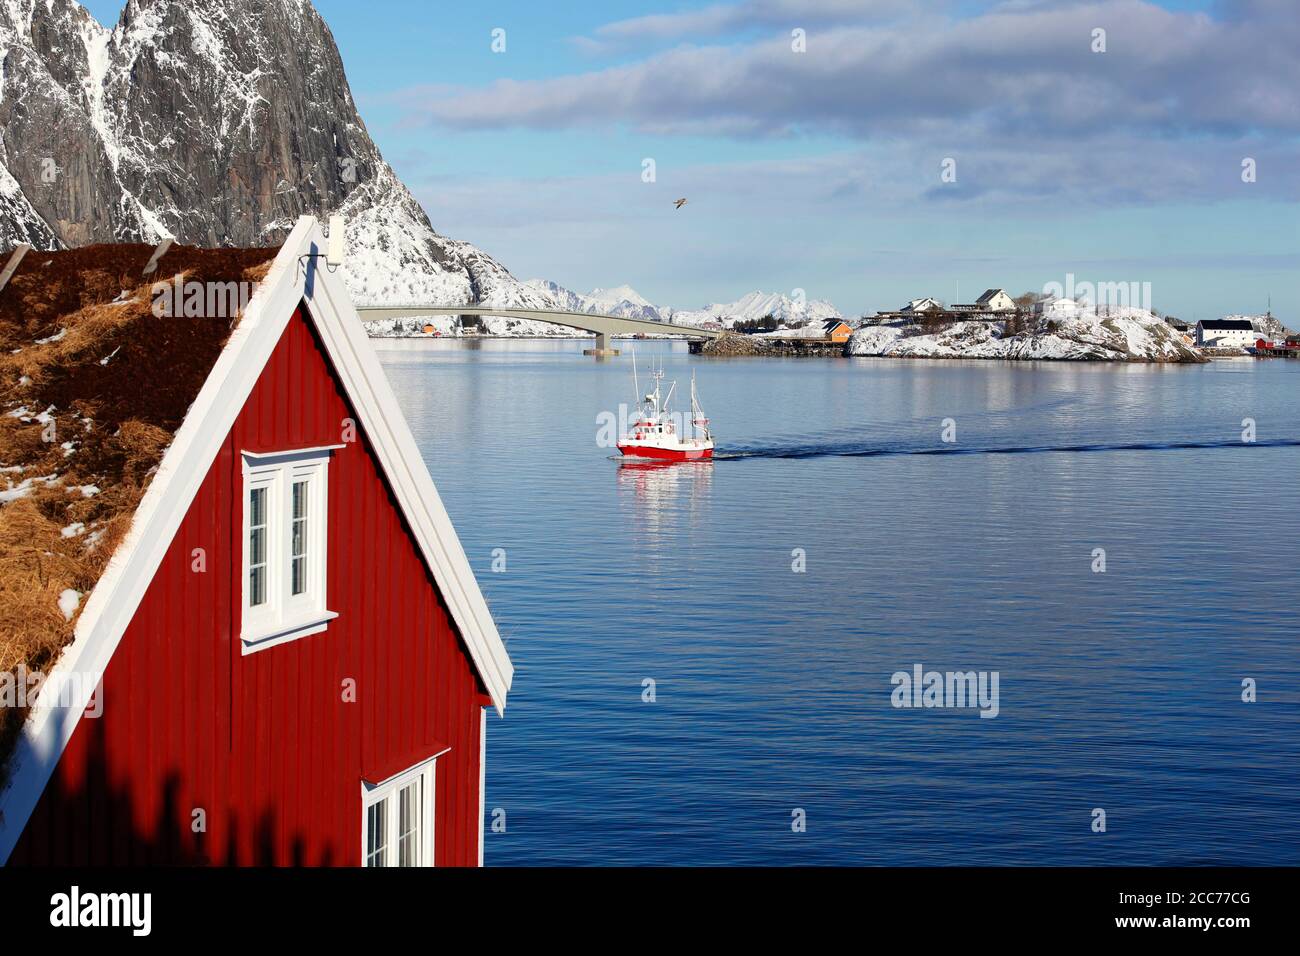 Schöne klassische Ansicht von Winter Fjord mit rotem Haus im Vordergrund und coming roten Fischerboot in Olenilsoya in reine, Lofoten Inseln, Norwegen Stockfoto